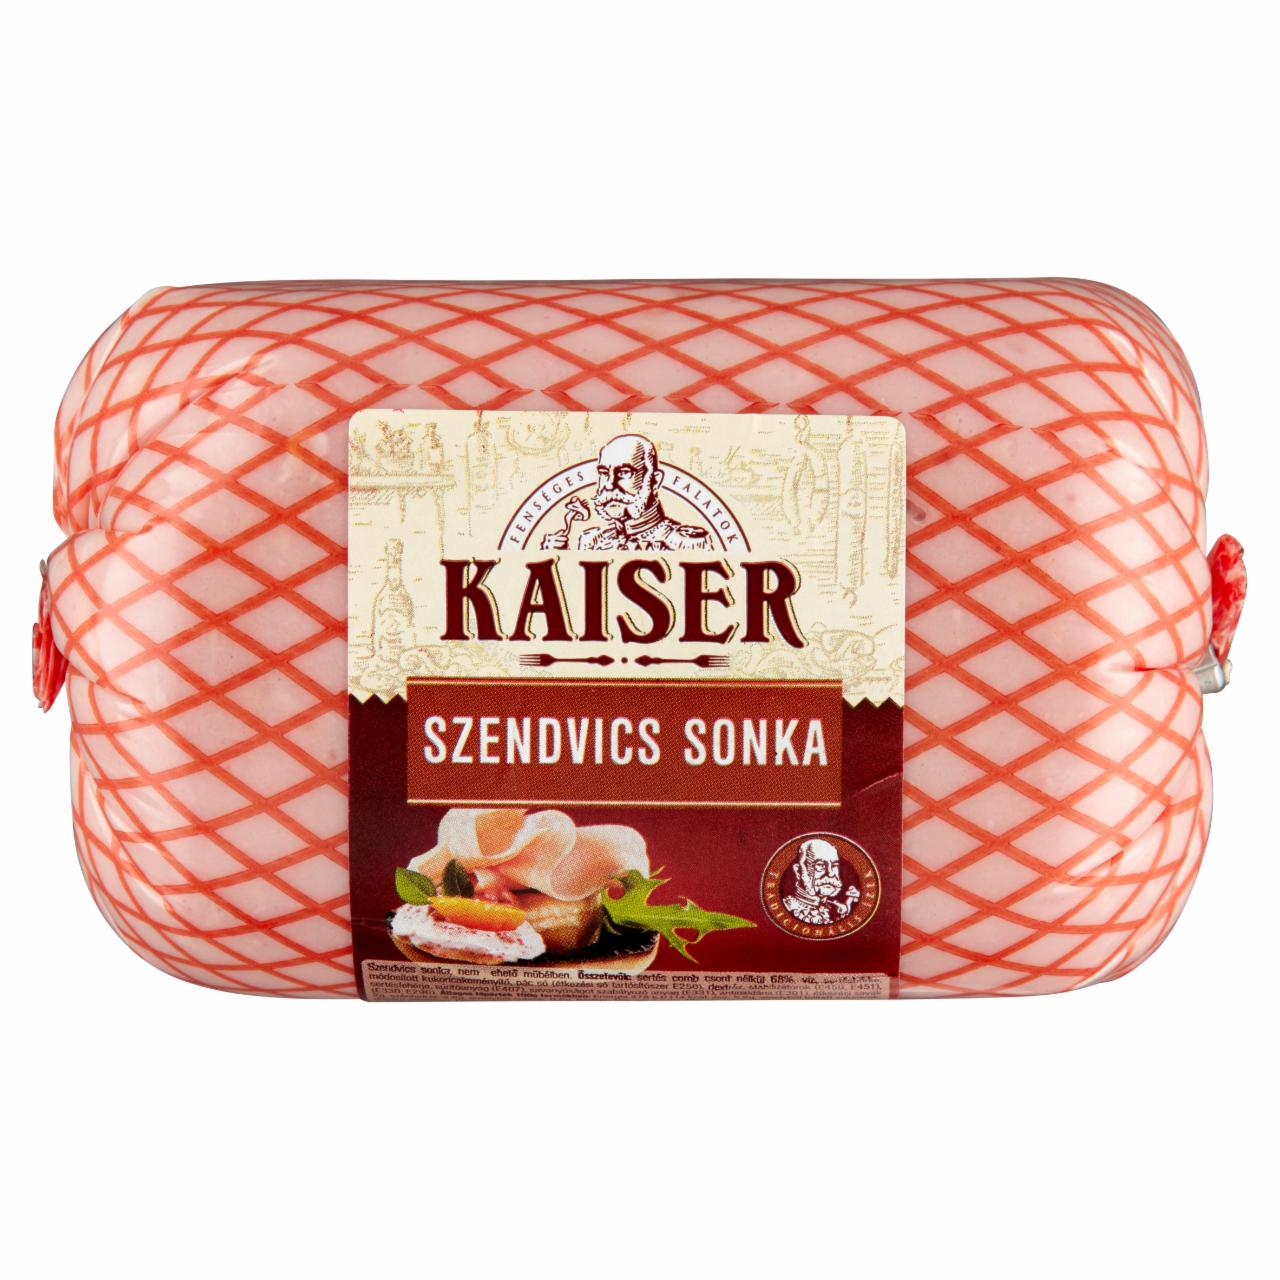 Képek - Kaiser szendvics sonka 800 g